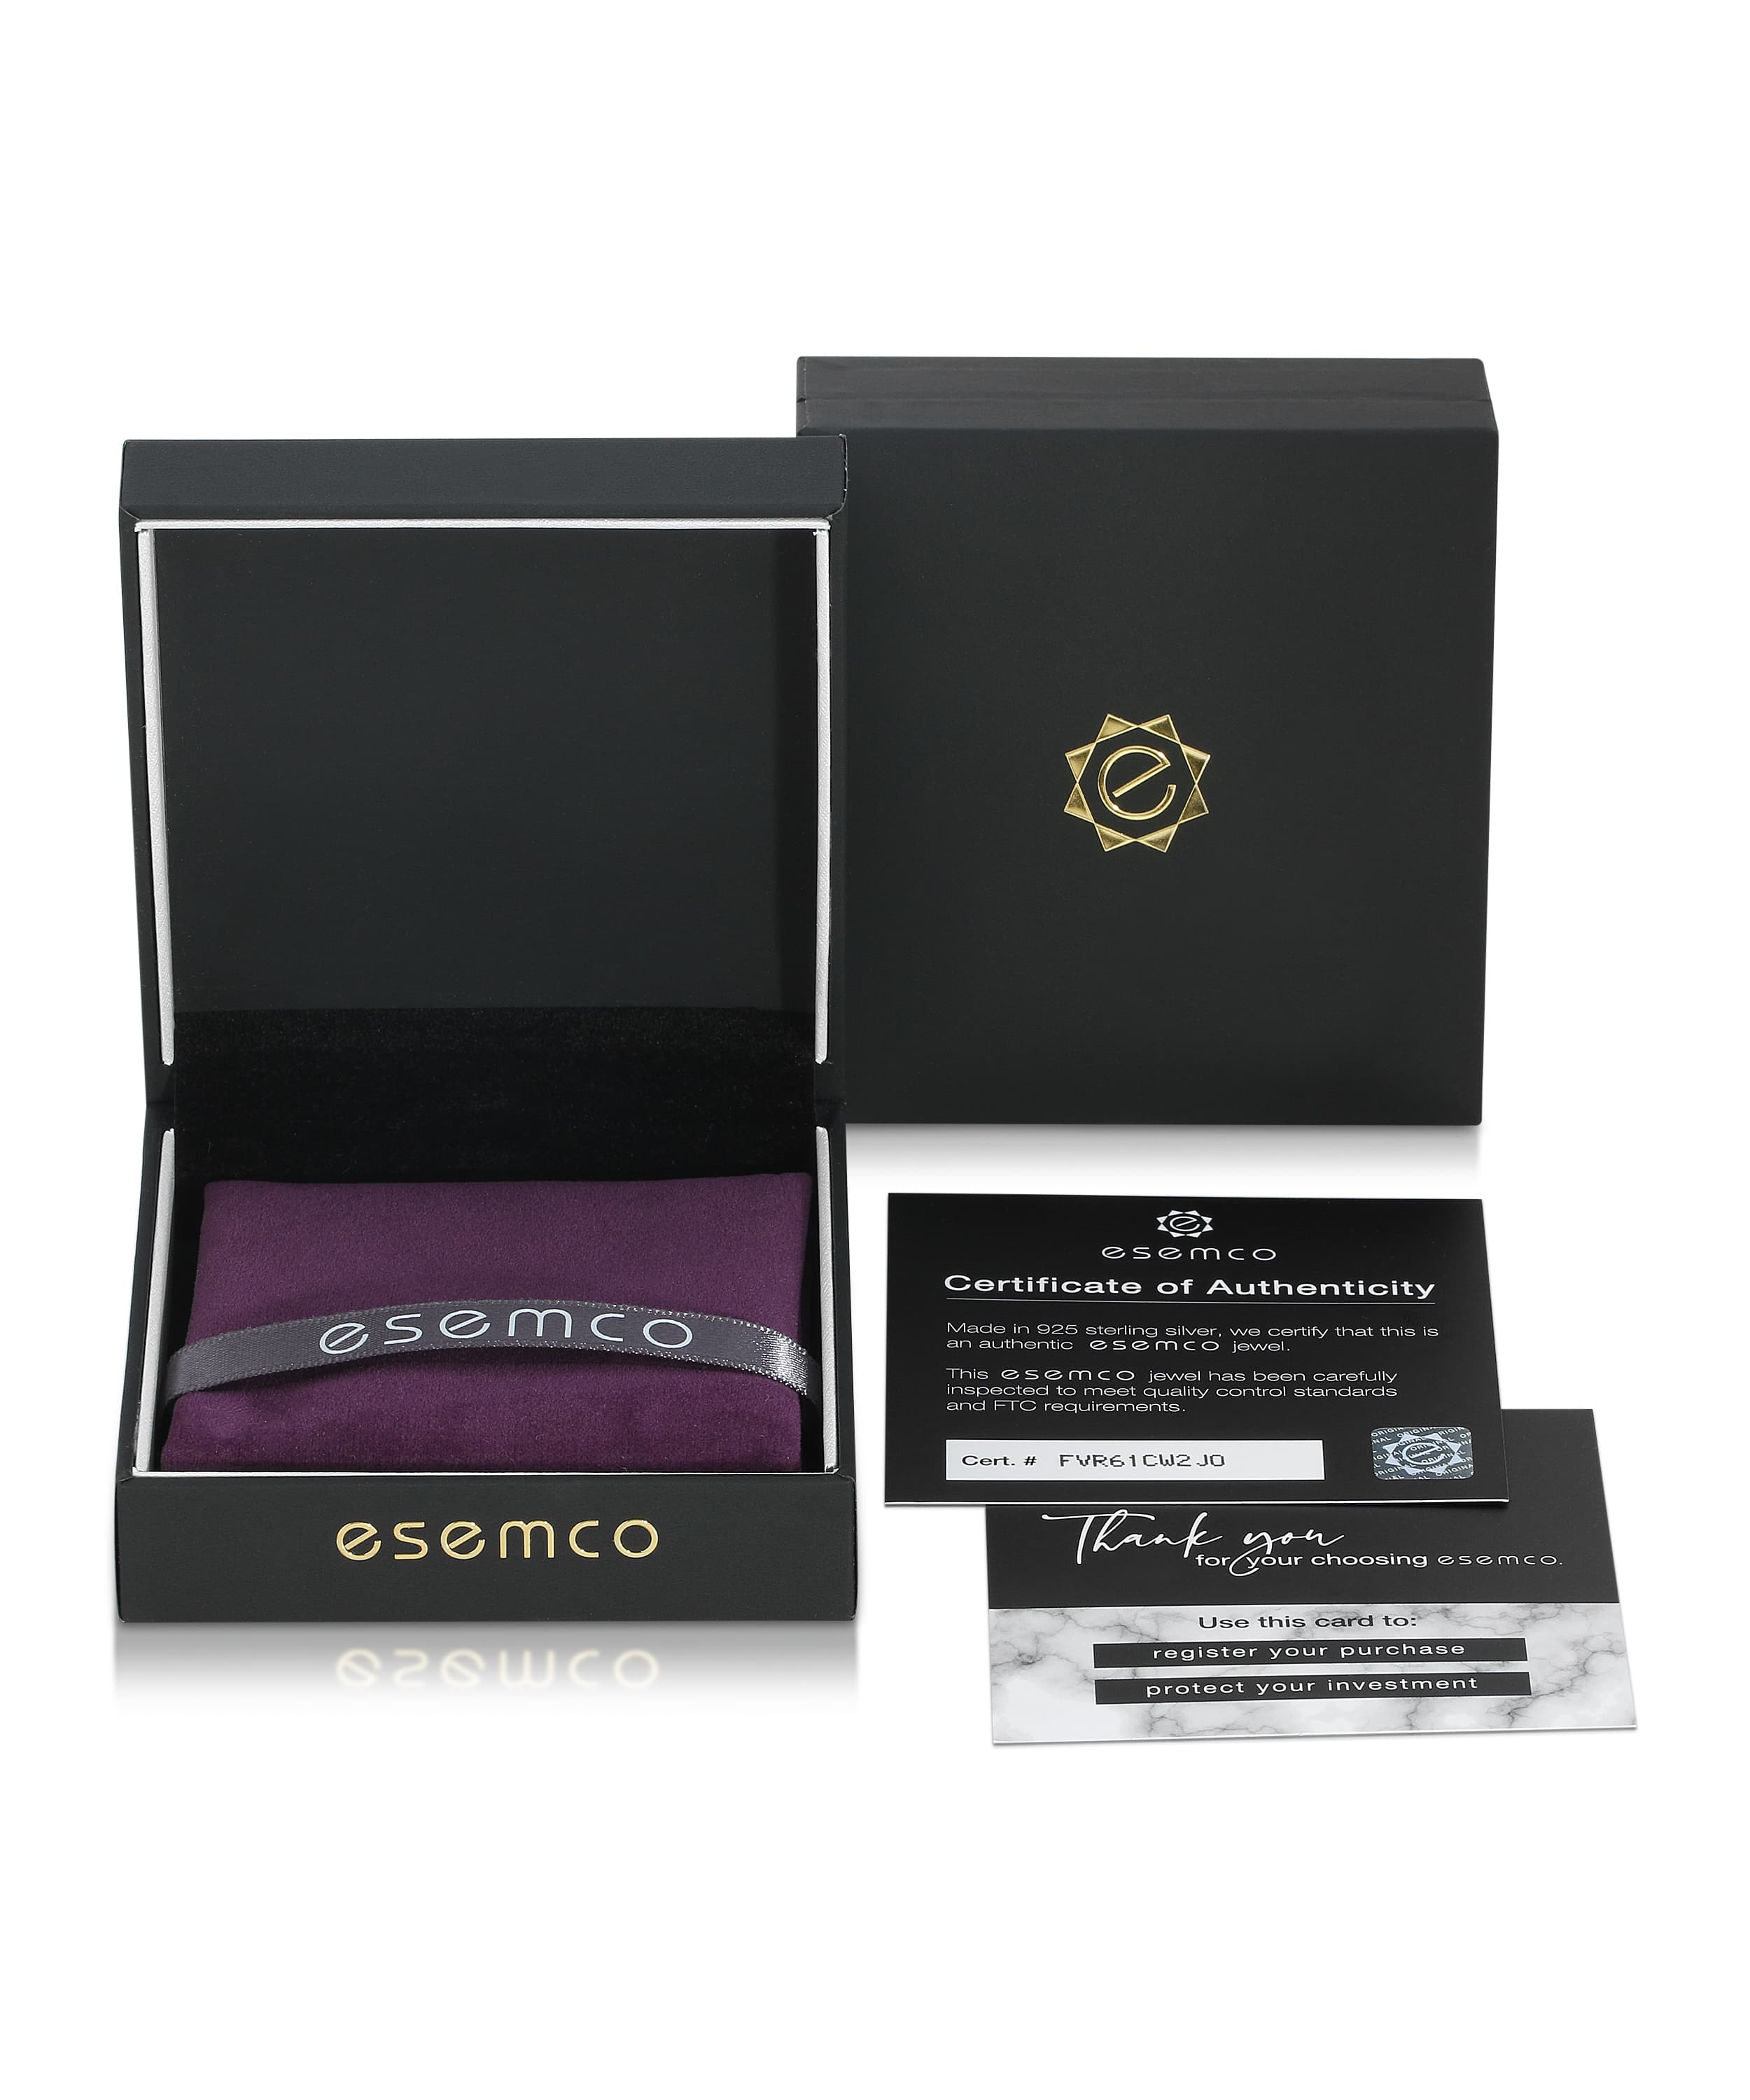 ESEMCO Diamond 18k White Gold Letter P Initial Open Ring View 4